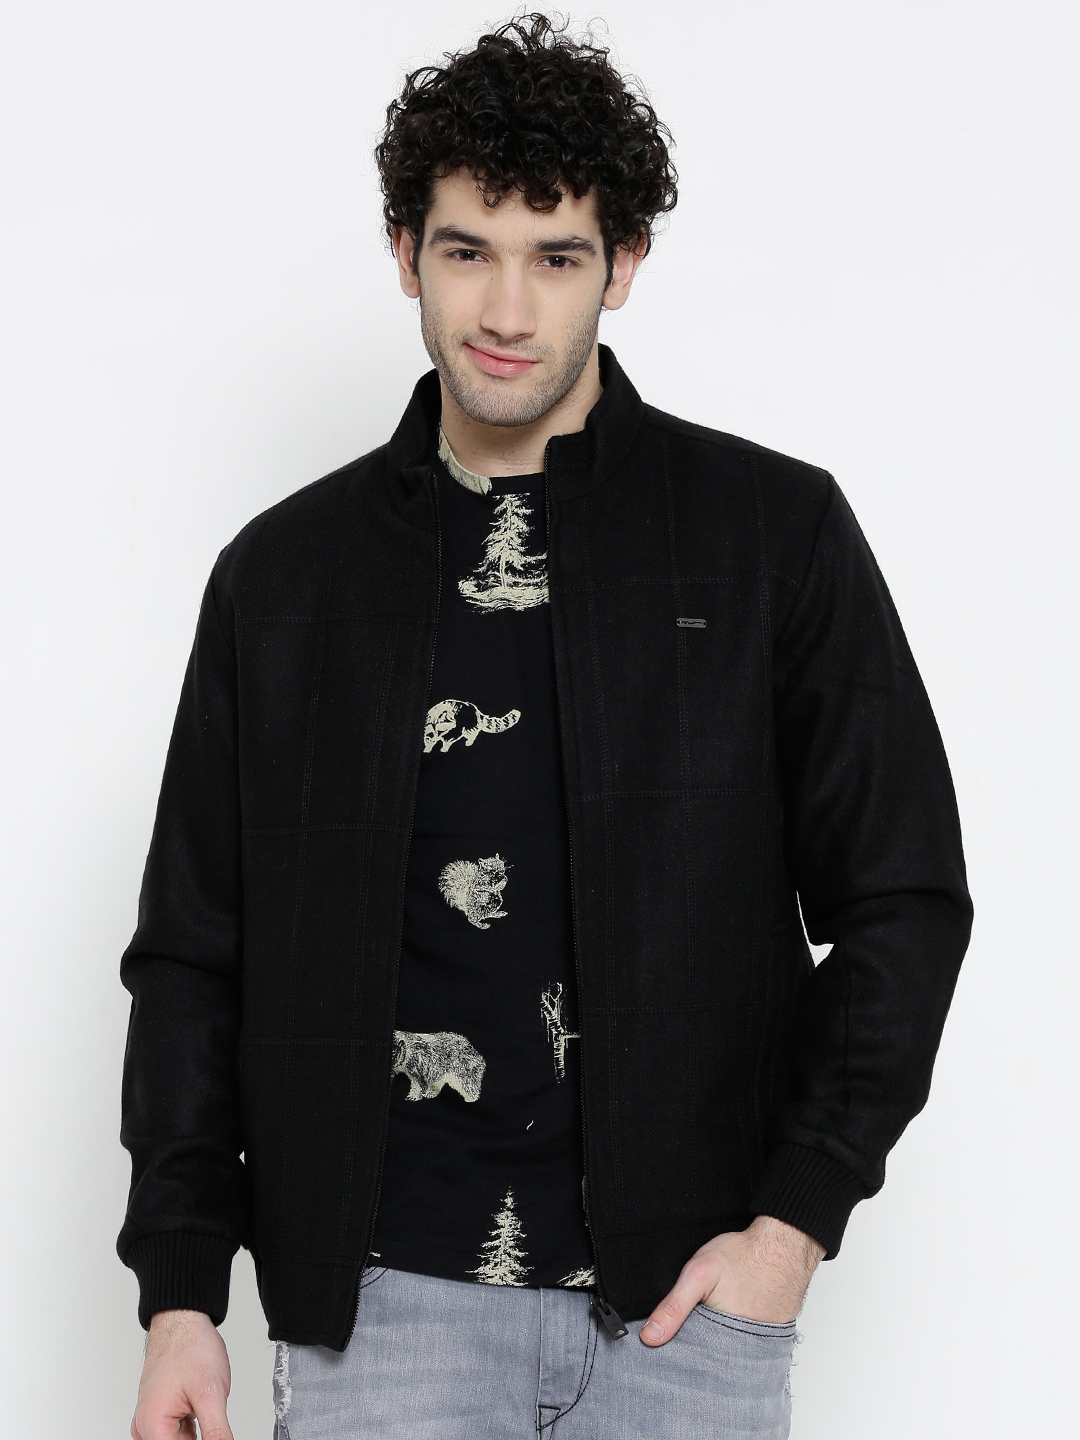 Buy Numero Uno Black Tweed Jacket - Jackets for Men 1142846 | Myntra